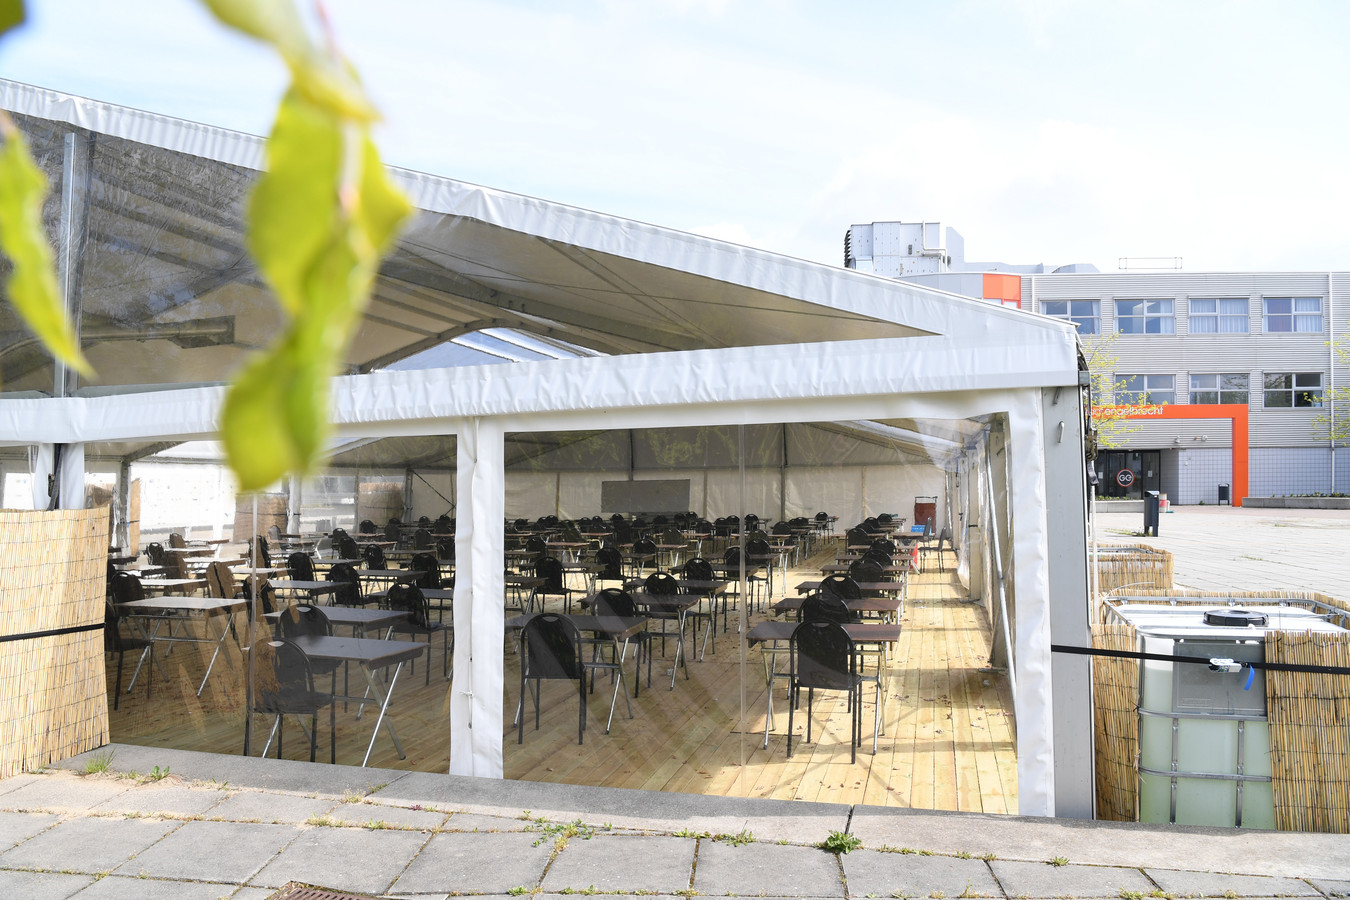 Op het Graaf Engelbrecht in Breda vinden examens plaats in een grote tent die op het schoolplein staat.